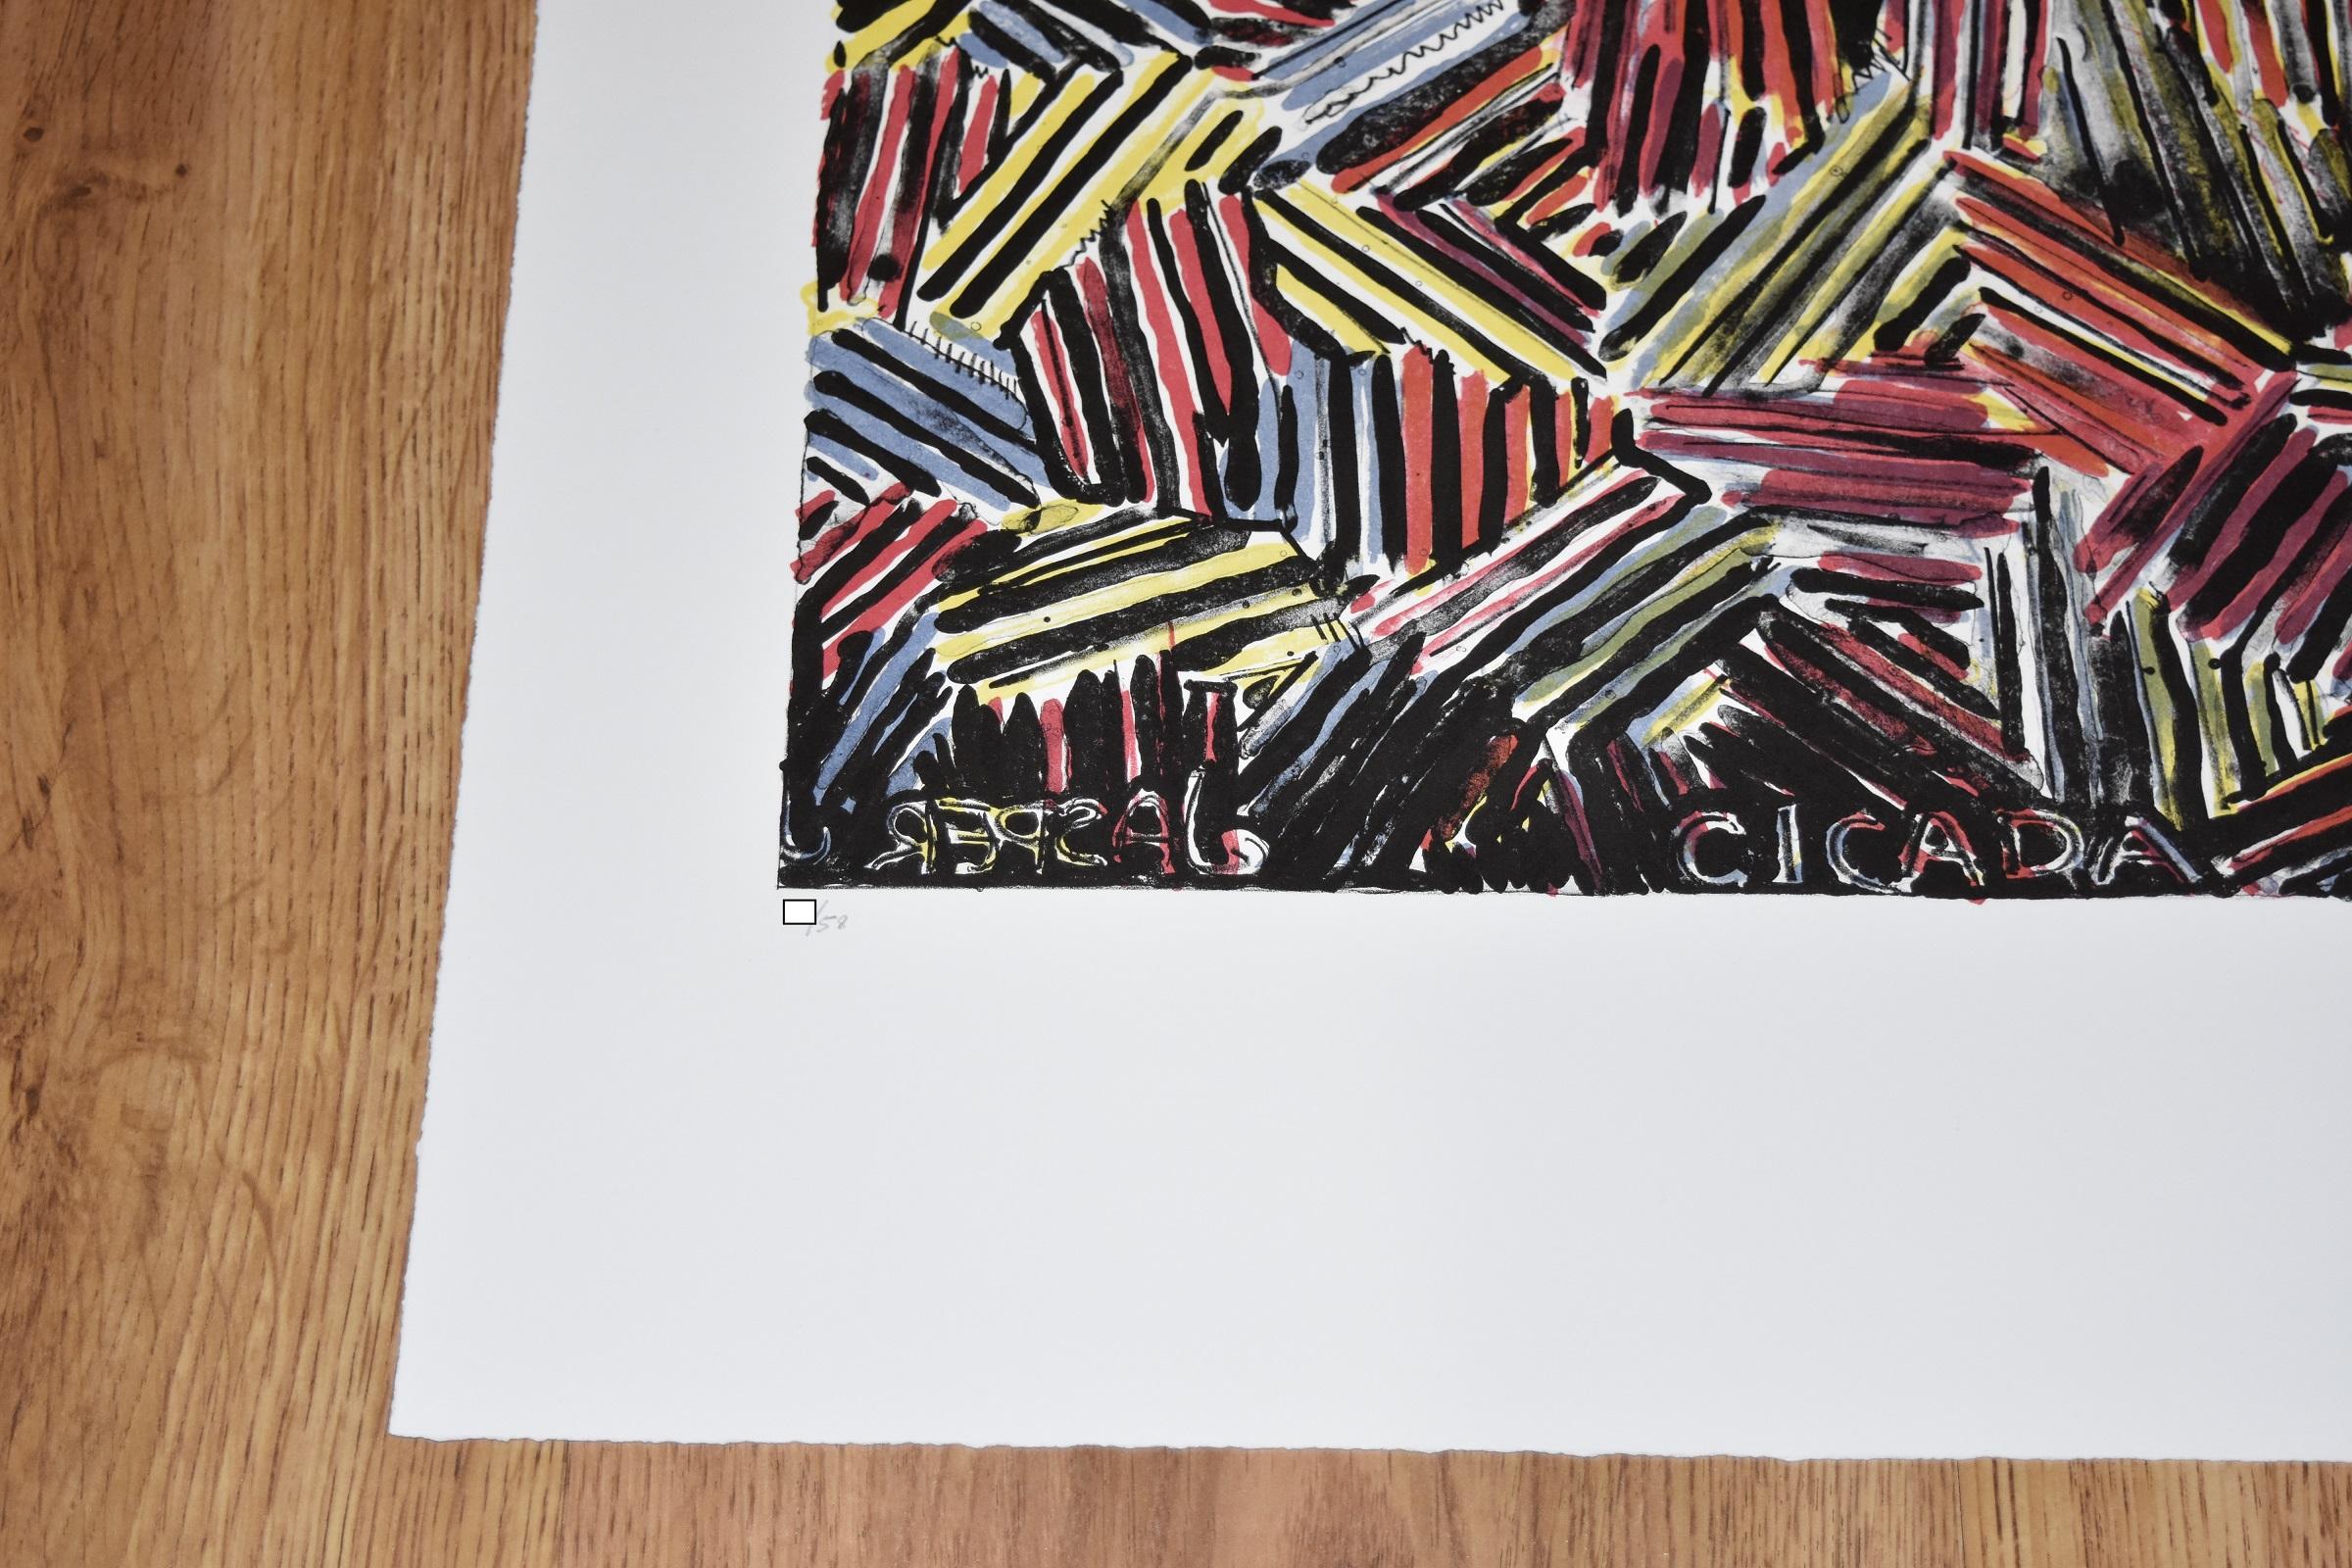 Diese Arbeit von Johns besteht aus mehrfarbigen Bändern in Bandoptik.  Diese Original-Lithographie in Farben, auf Arches 88 Papier ist garantiert authentisch und wird vom Künstler handsigniert.

Künstler:  Jasper Johns
Titel:  